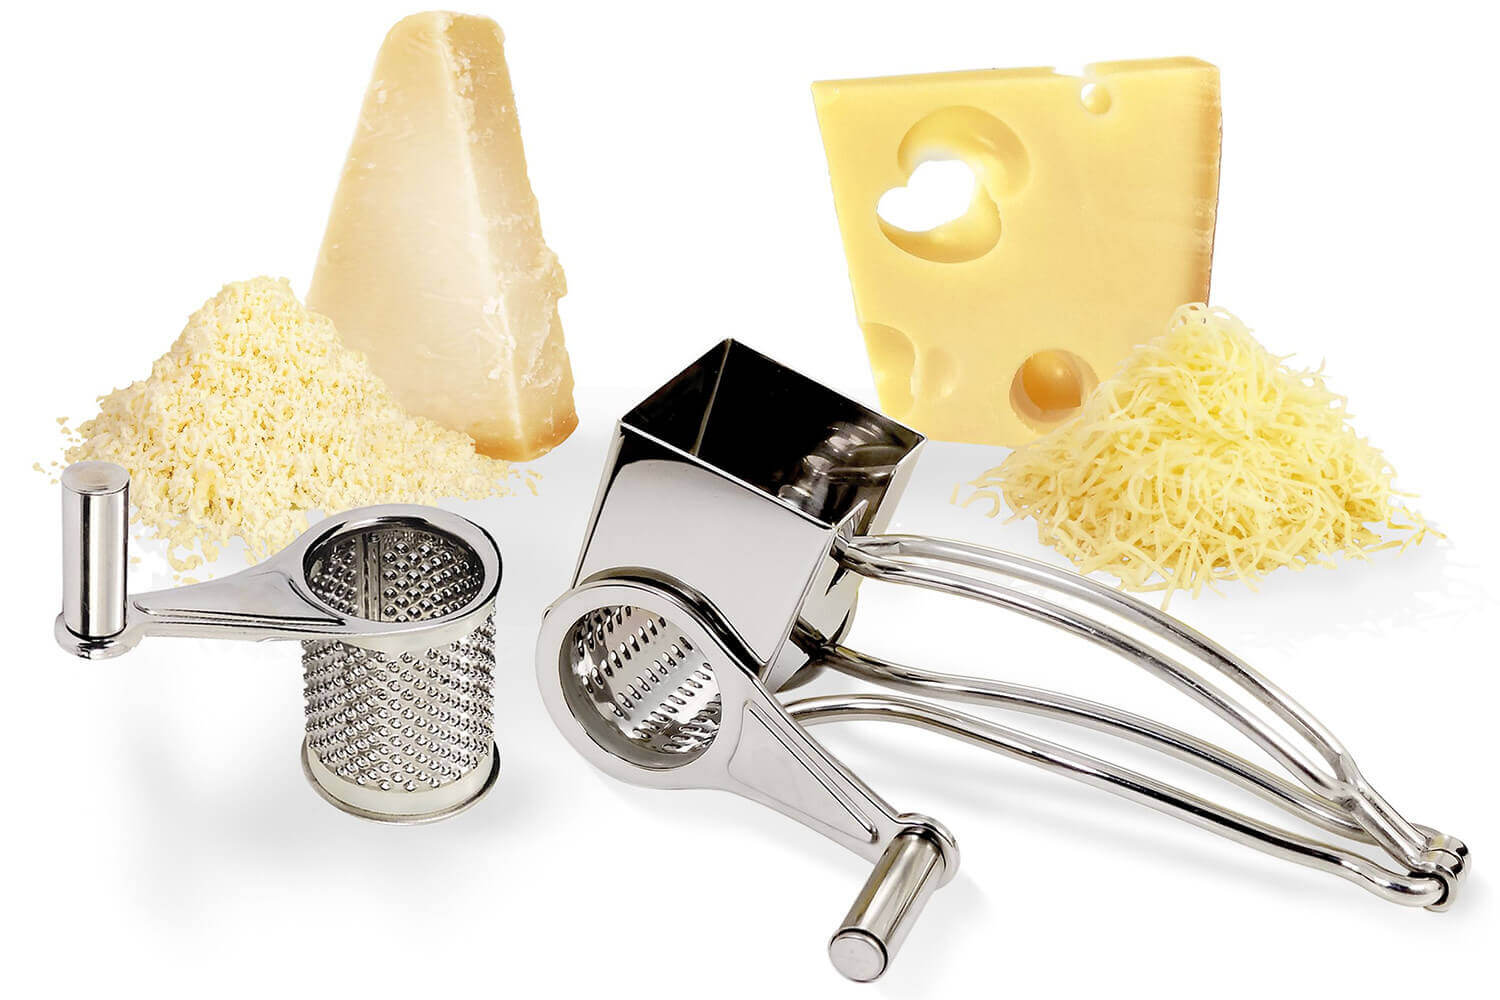 Râpe fromage inox - Tom Press